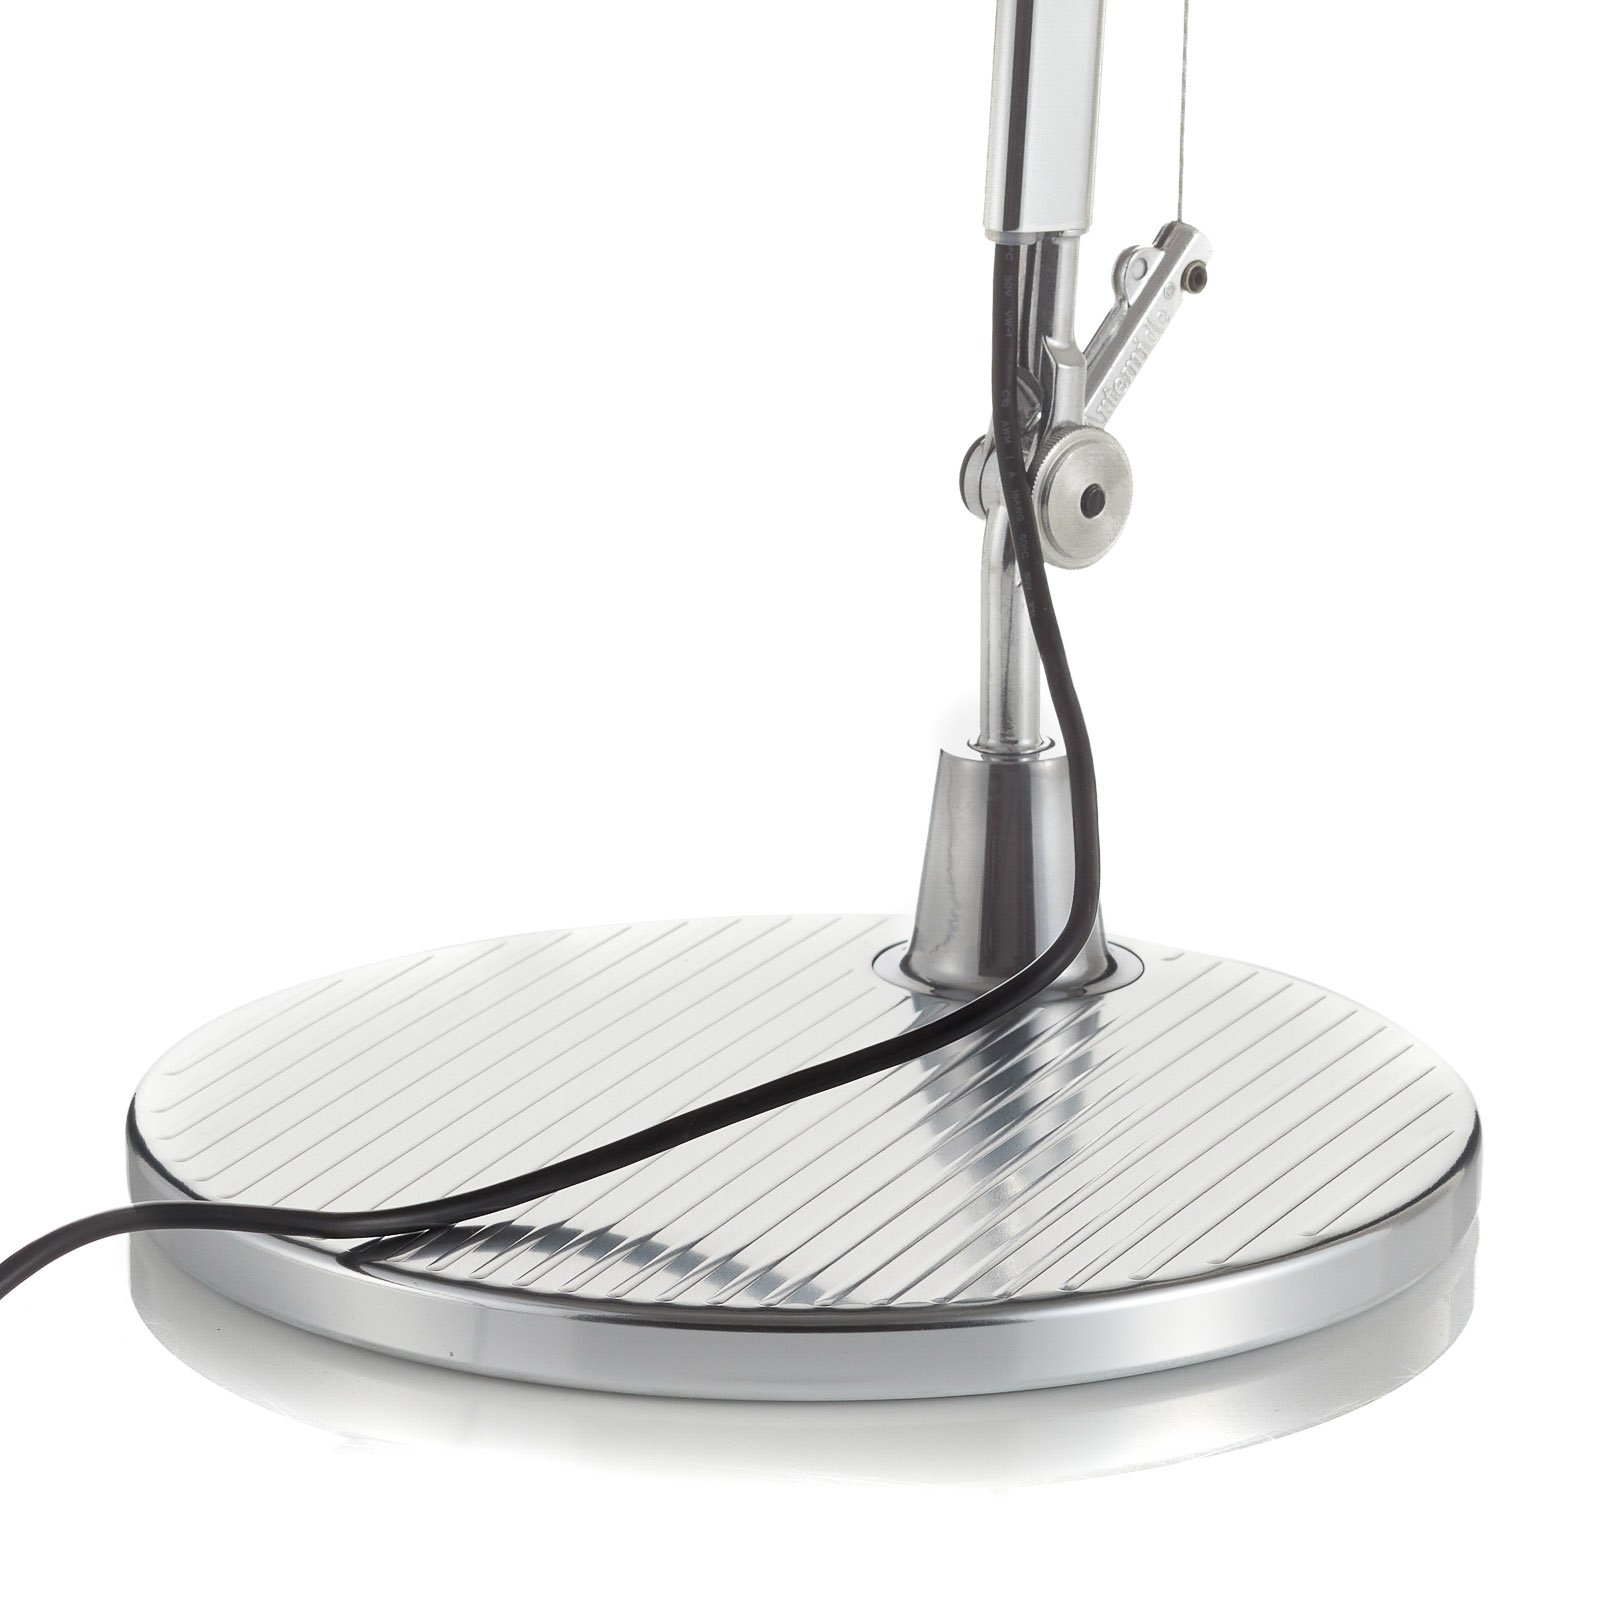 Artemide Tolomeo lampa stołowa LED Tunable White